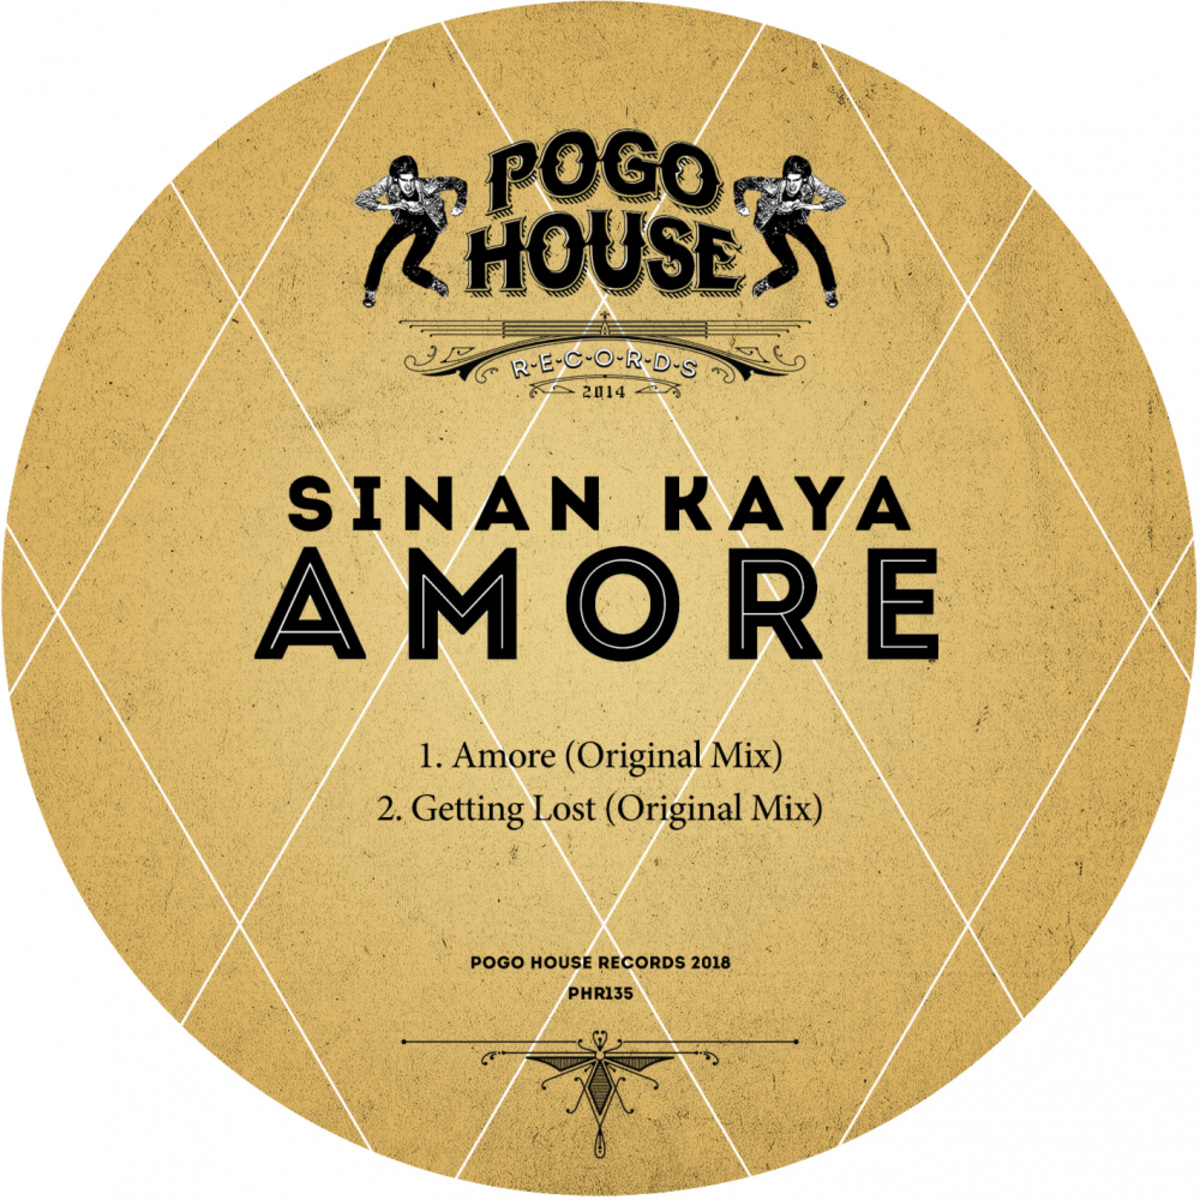 Sinan Kaya - Amore / POGO HOUSE REC